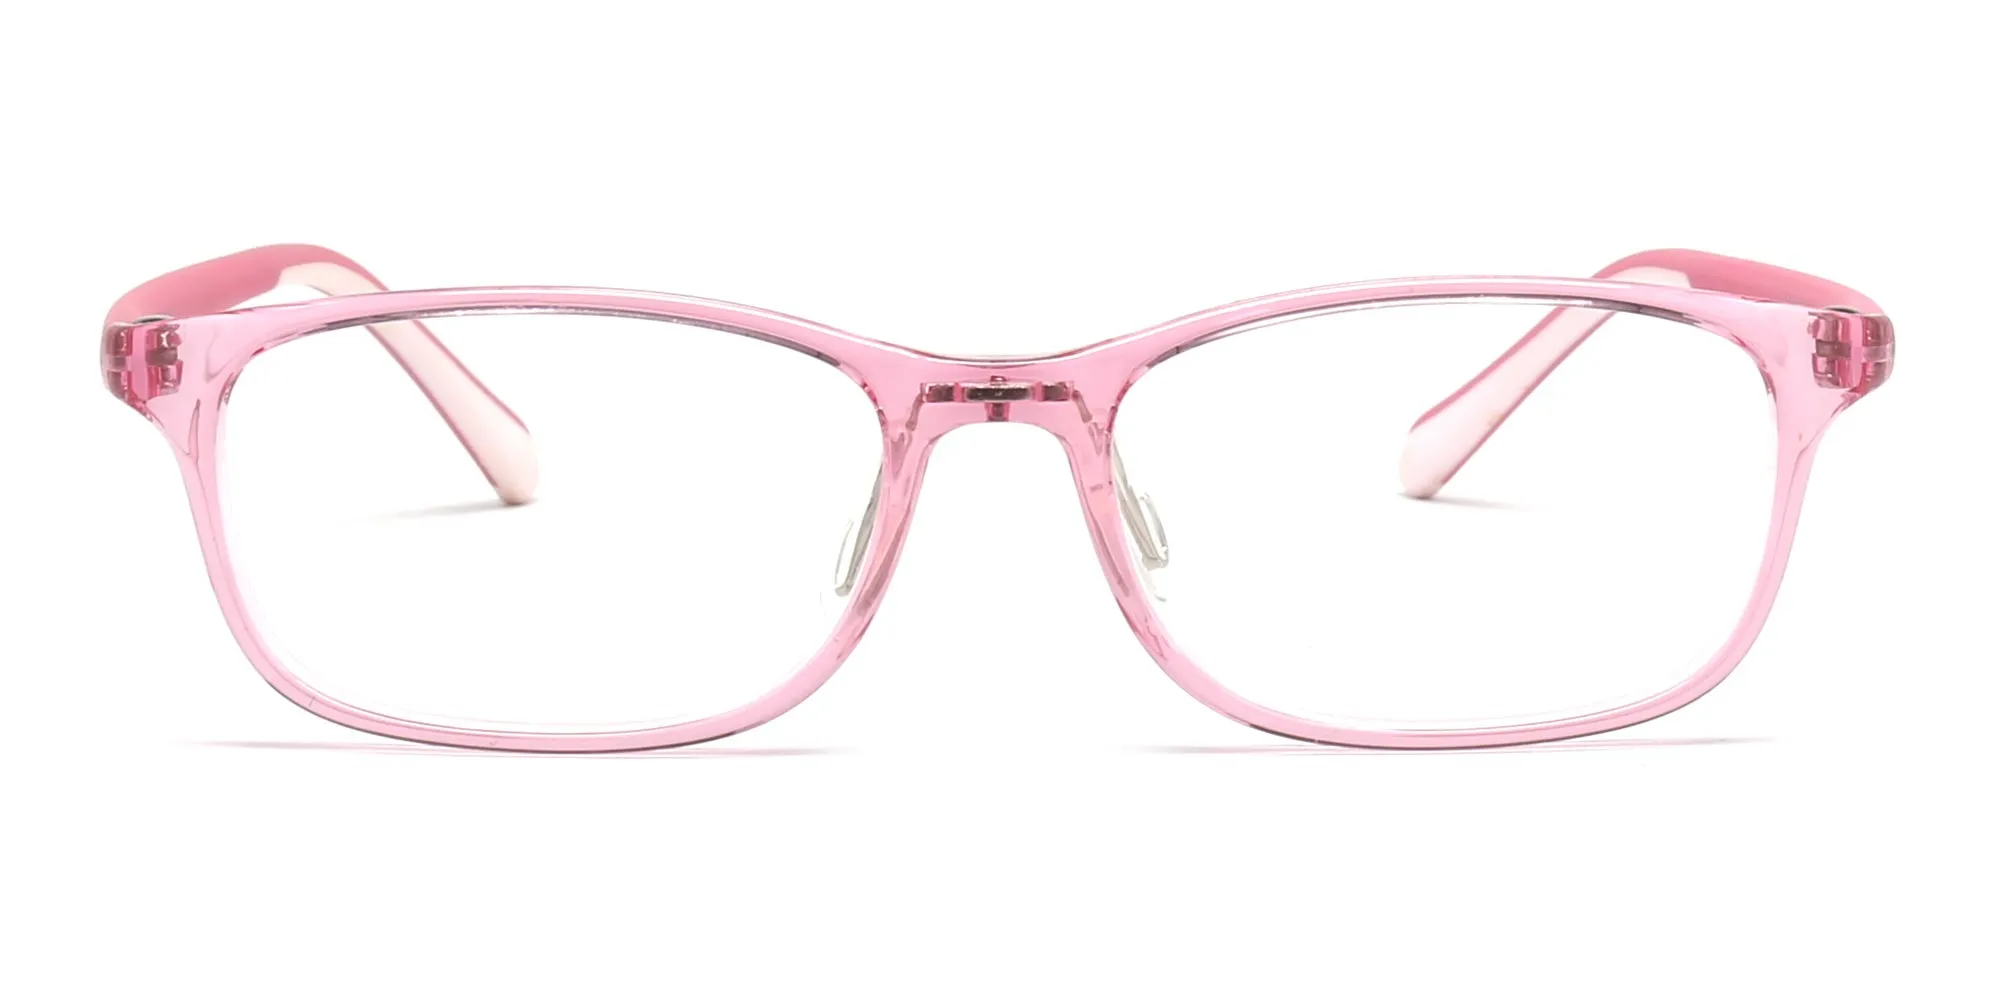 girls glasses frames-2